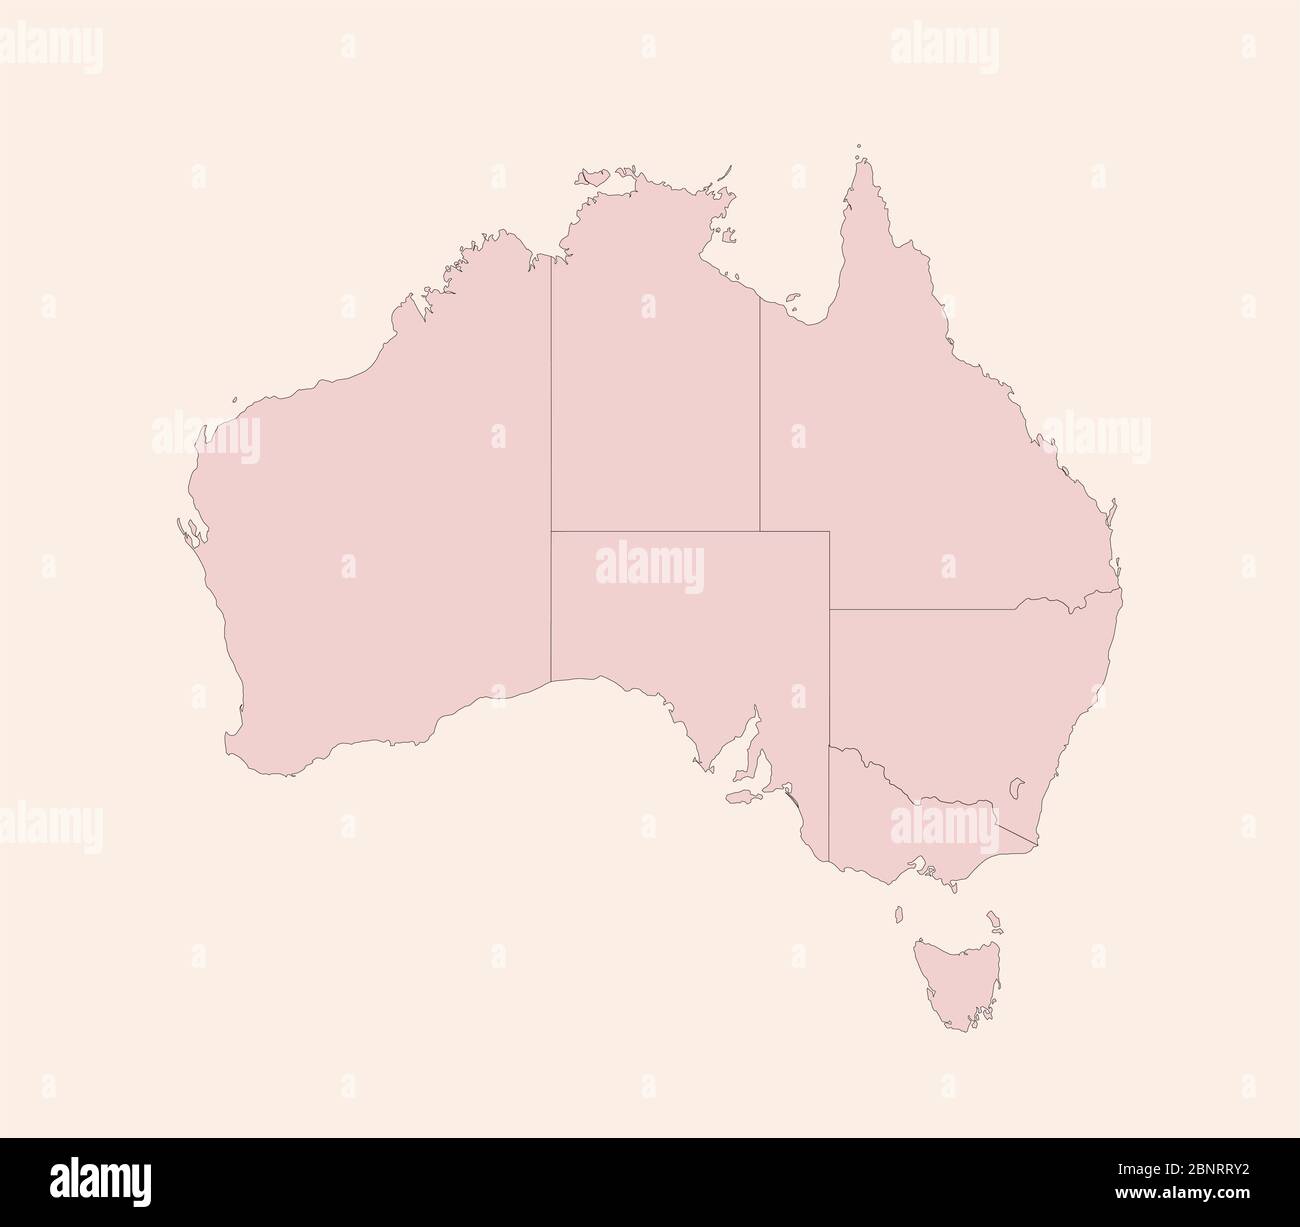 Australien politische Karte mit Provinzen Vektor. Vintage rosa Schatten Hintergrund Vektor. Perfekt für Geschäftskonzepte, Hintergründe, Hintergrund, Banner, Pos. Stock Vektor